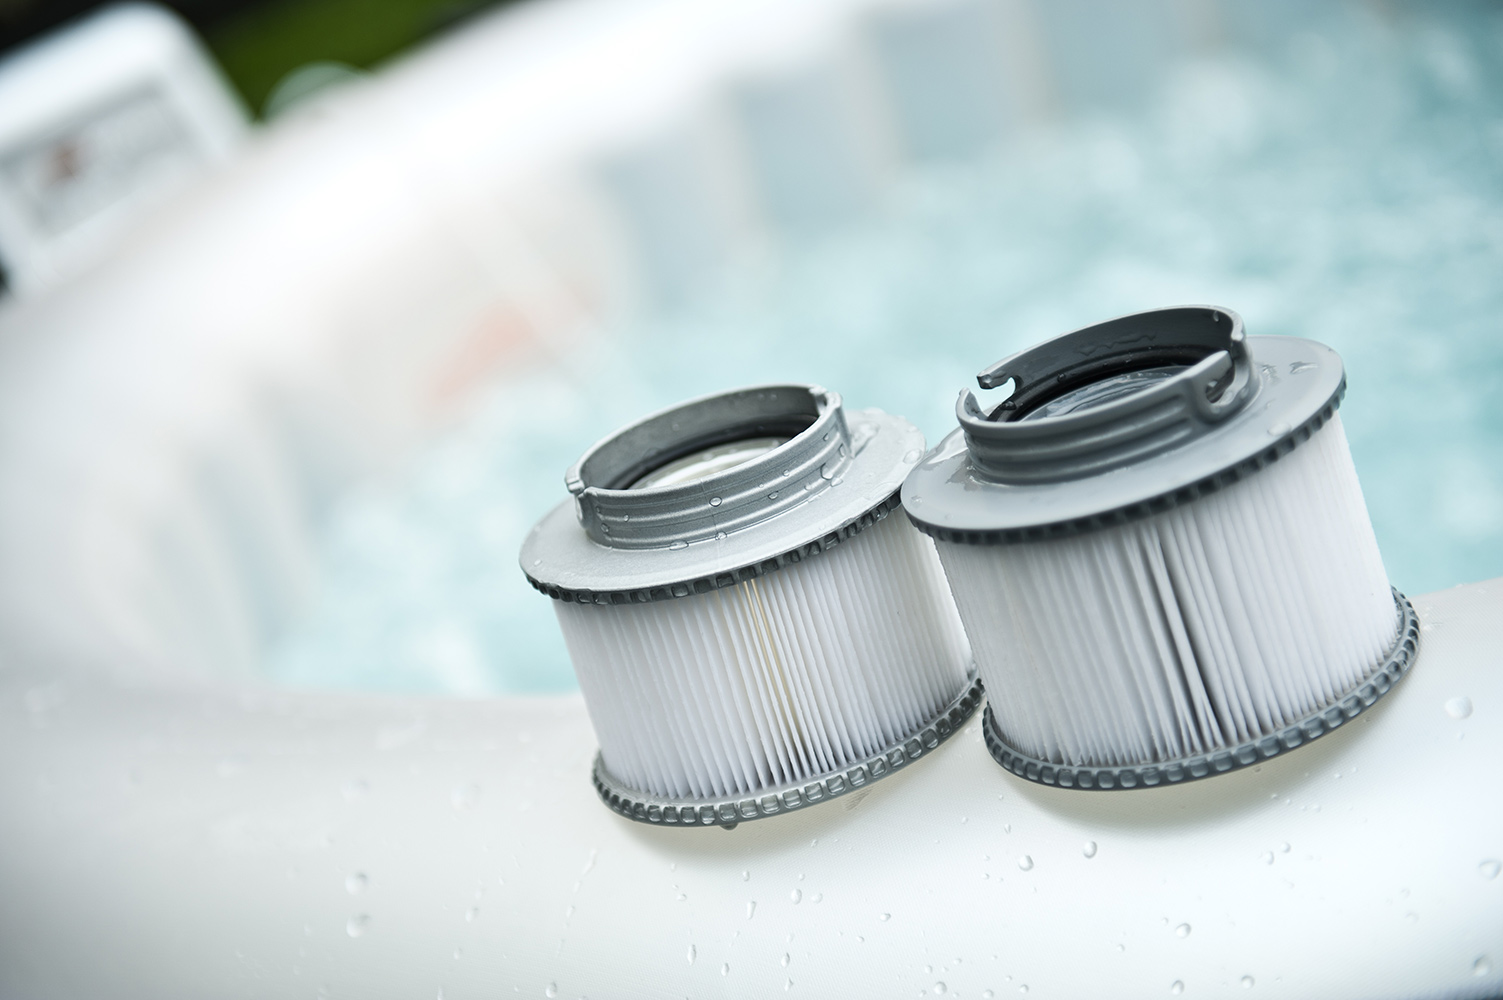 Cartouche de filtre de piscine pour filtre de piscine MSpa Spa